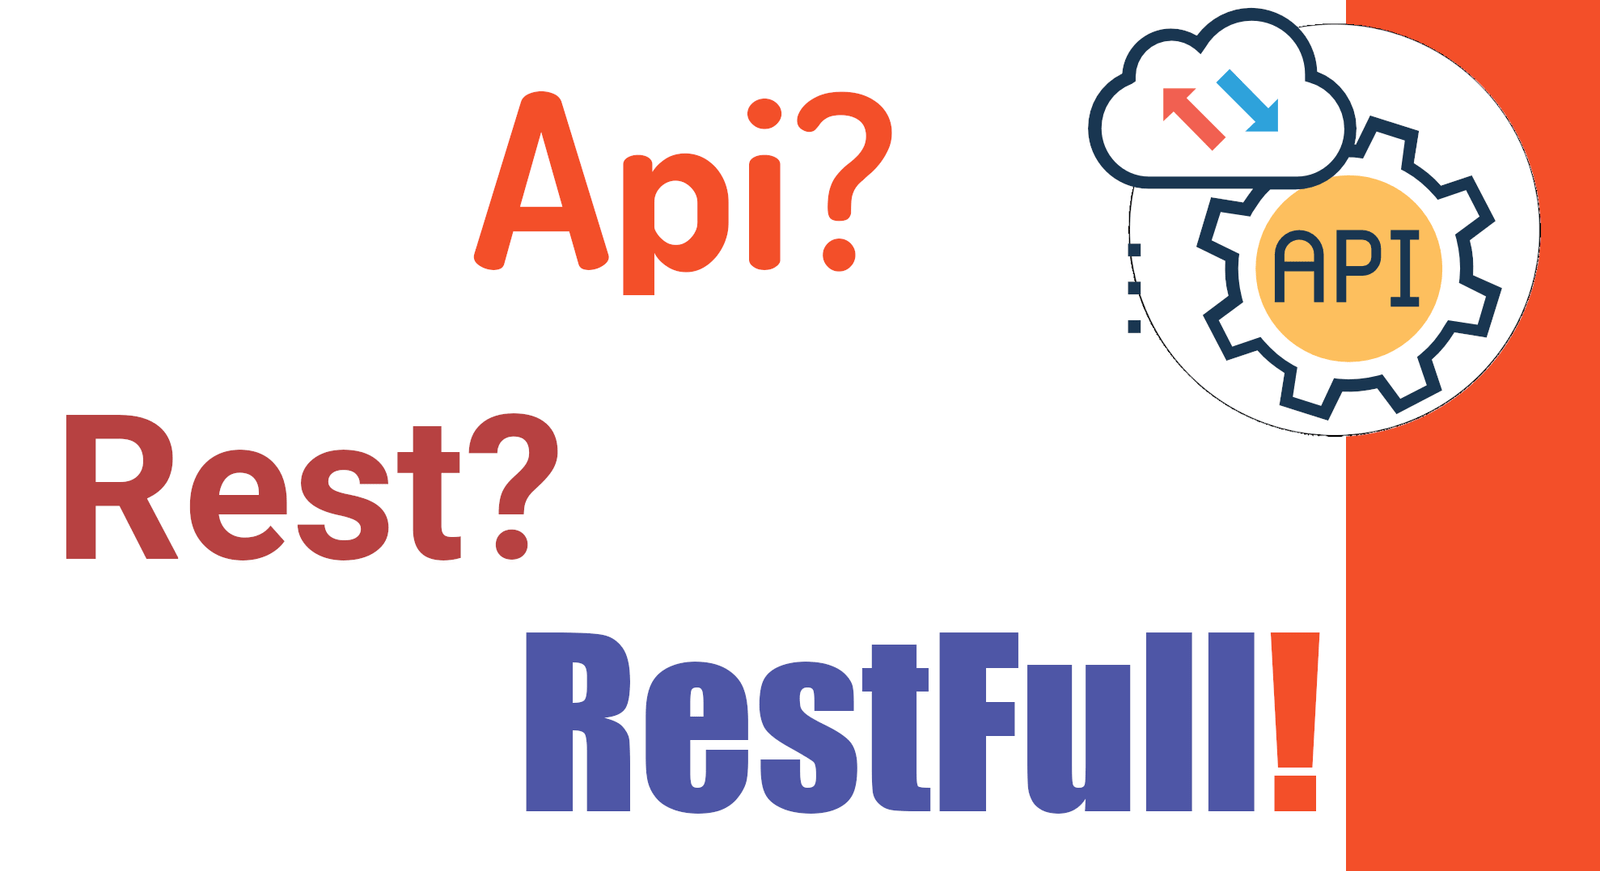 Mejores prácticas para la API Rest